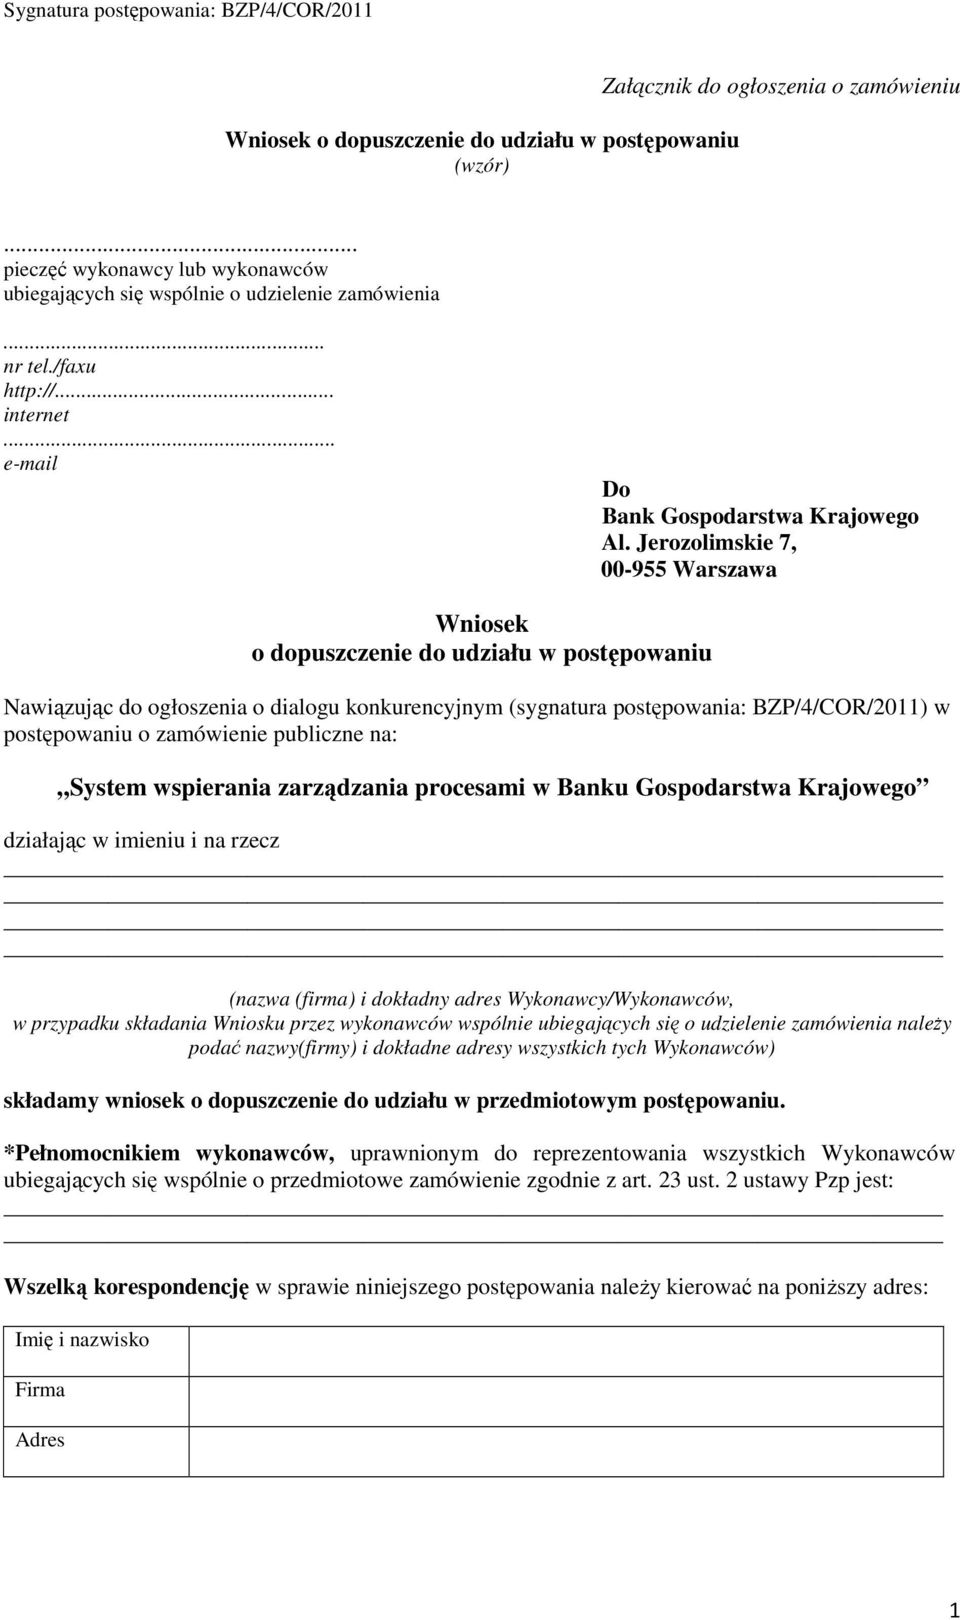 Jerozolimskie 7, 00-955 Warszawa Wniosek o dopuszczenie do udziału w postępowaniu Nawiązując do ogłoszenia o dialogu konkurencyjnym (sygnatura postępowania: BZP/4/COR/2011) w postępowaniu o